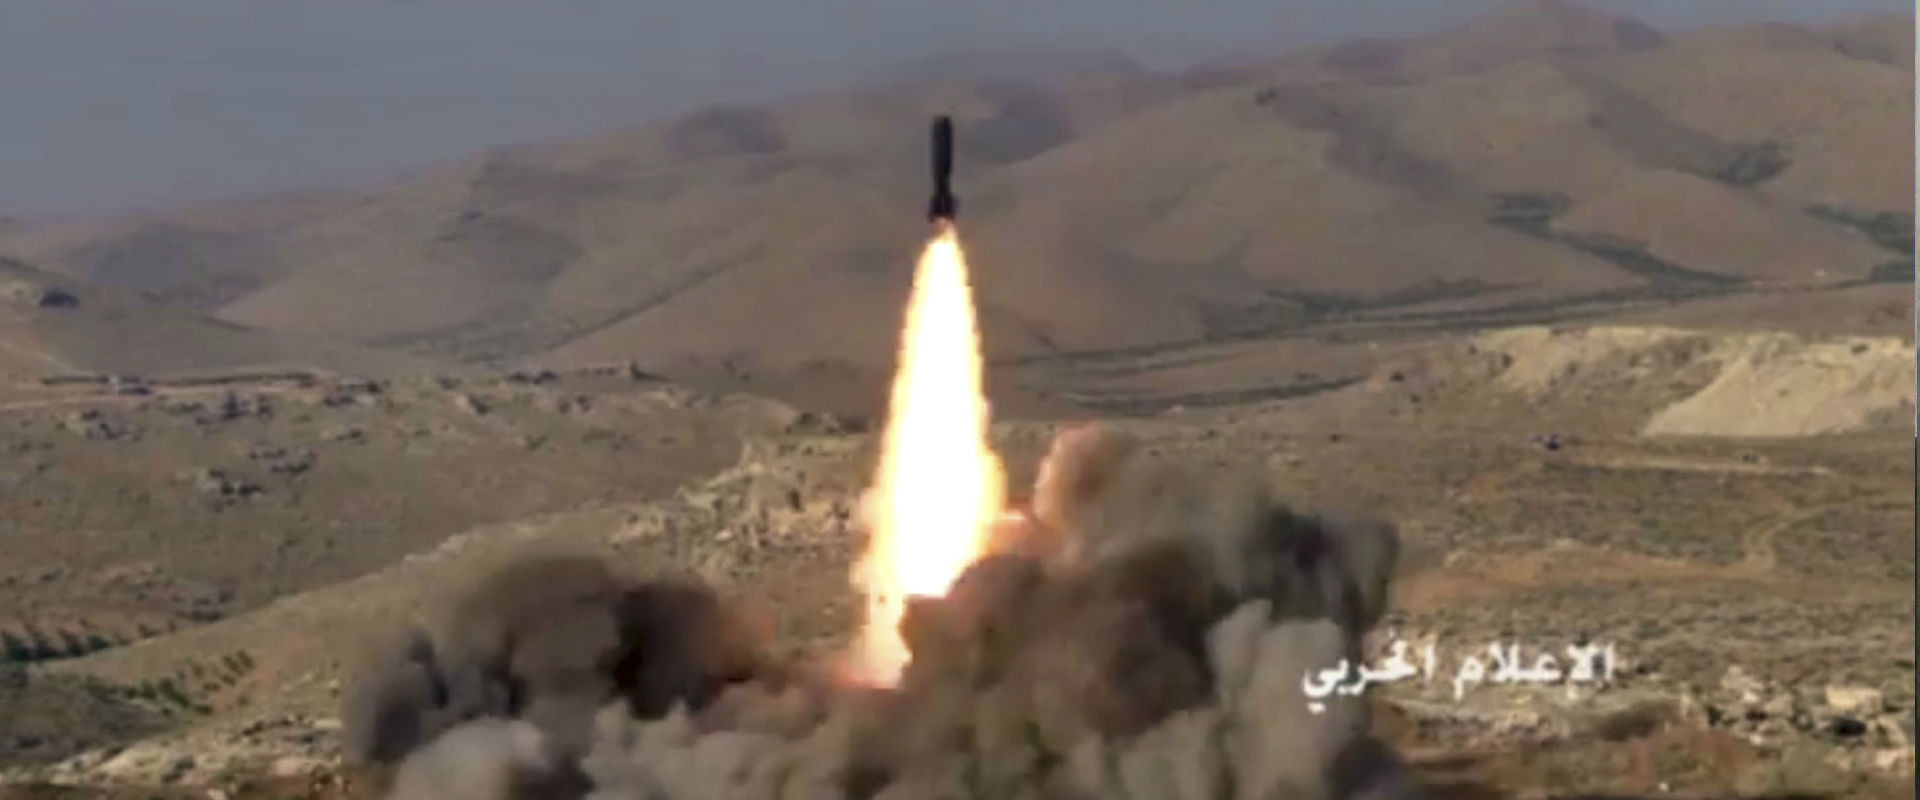 שיגור טיל של חיזבאללה בסוריה